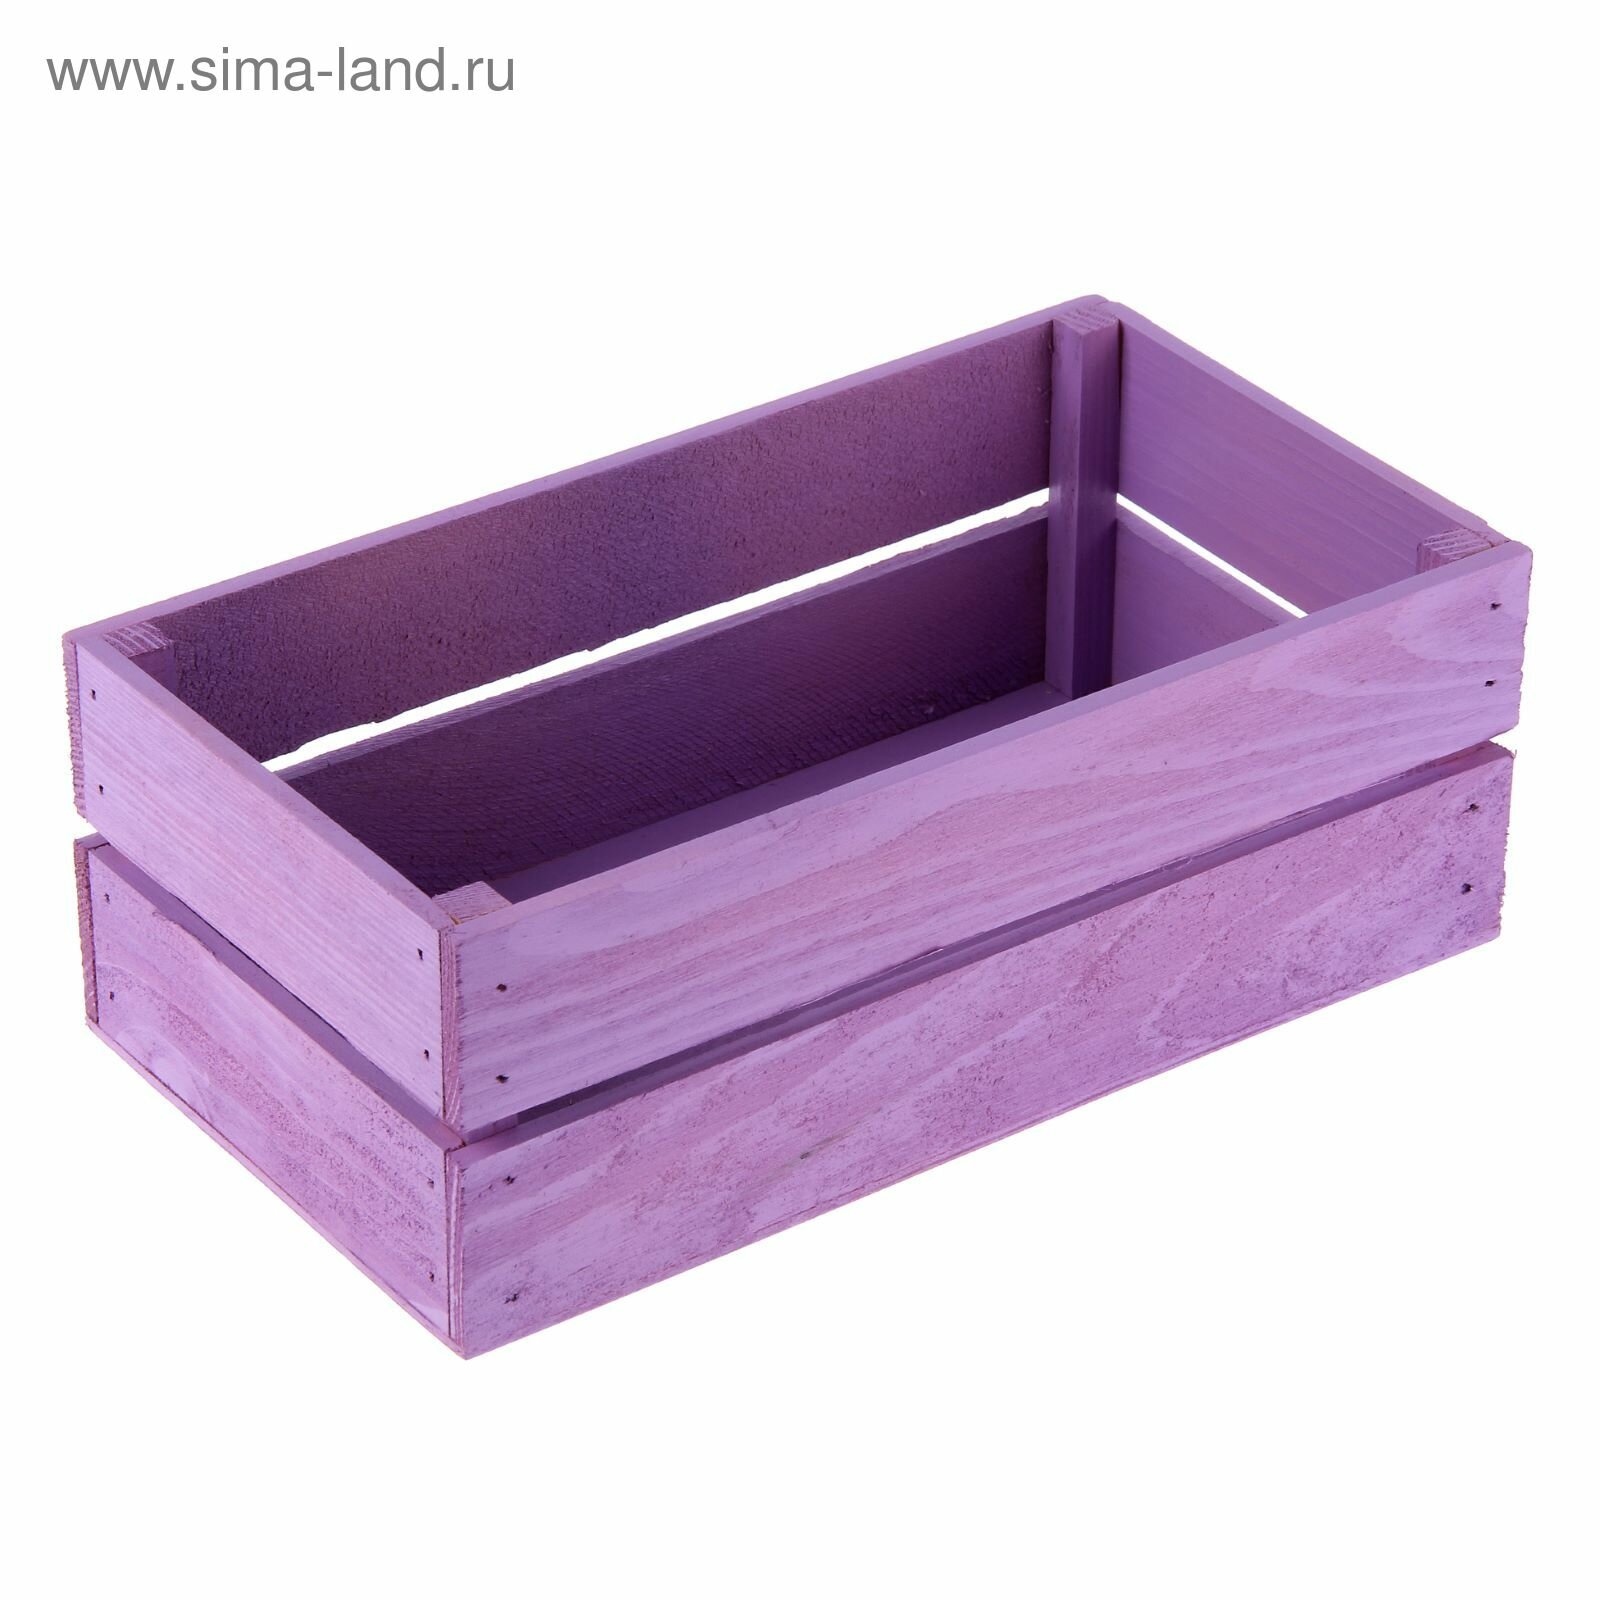 Ящик реечный №1 фиолетовый 235 х 114 х 9 см